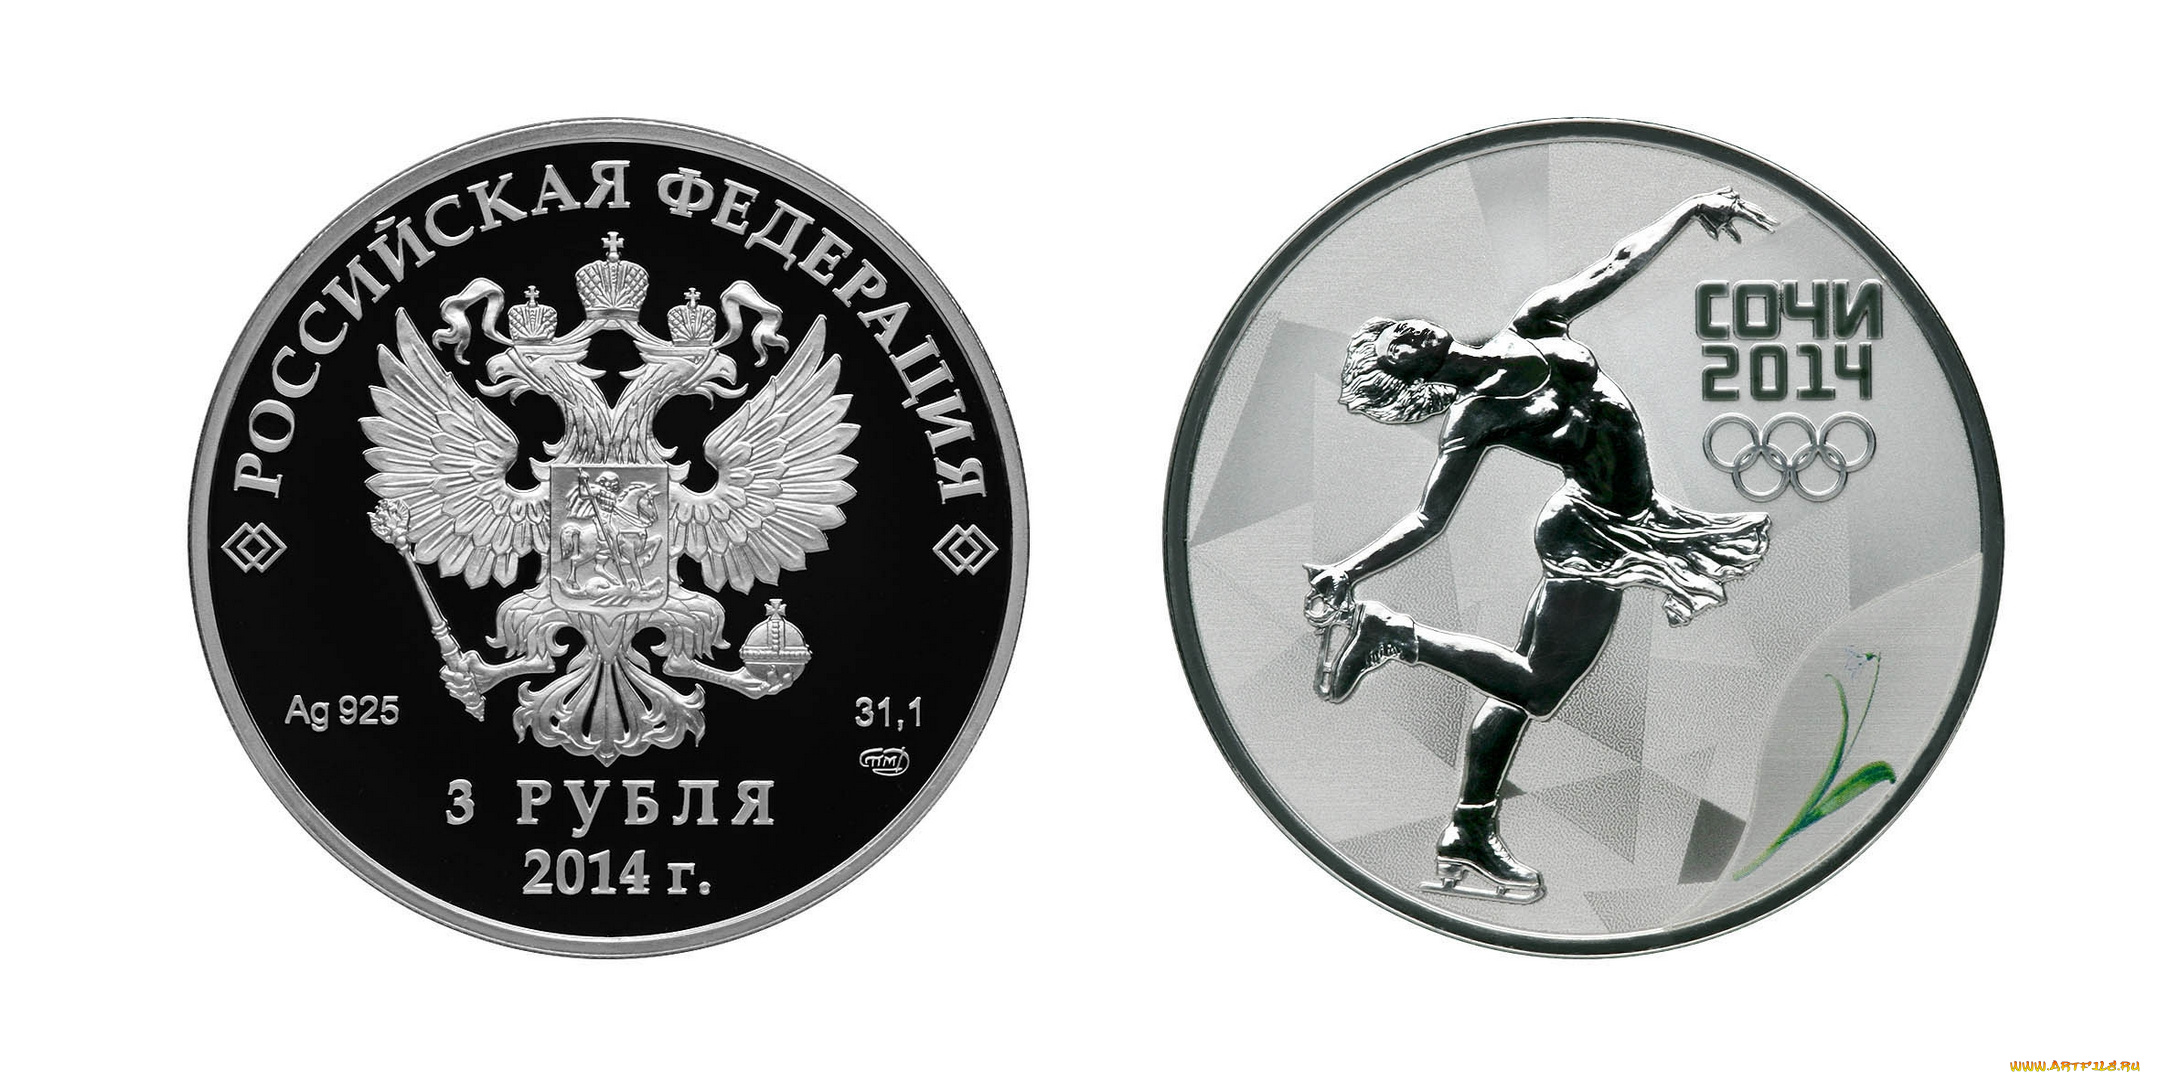 Монеты с олимпийской символикой